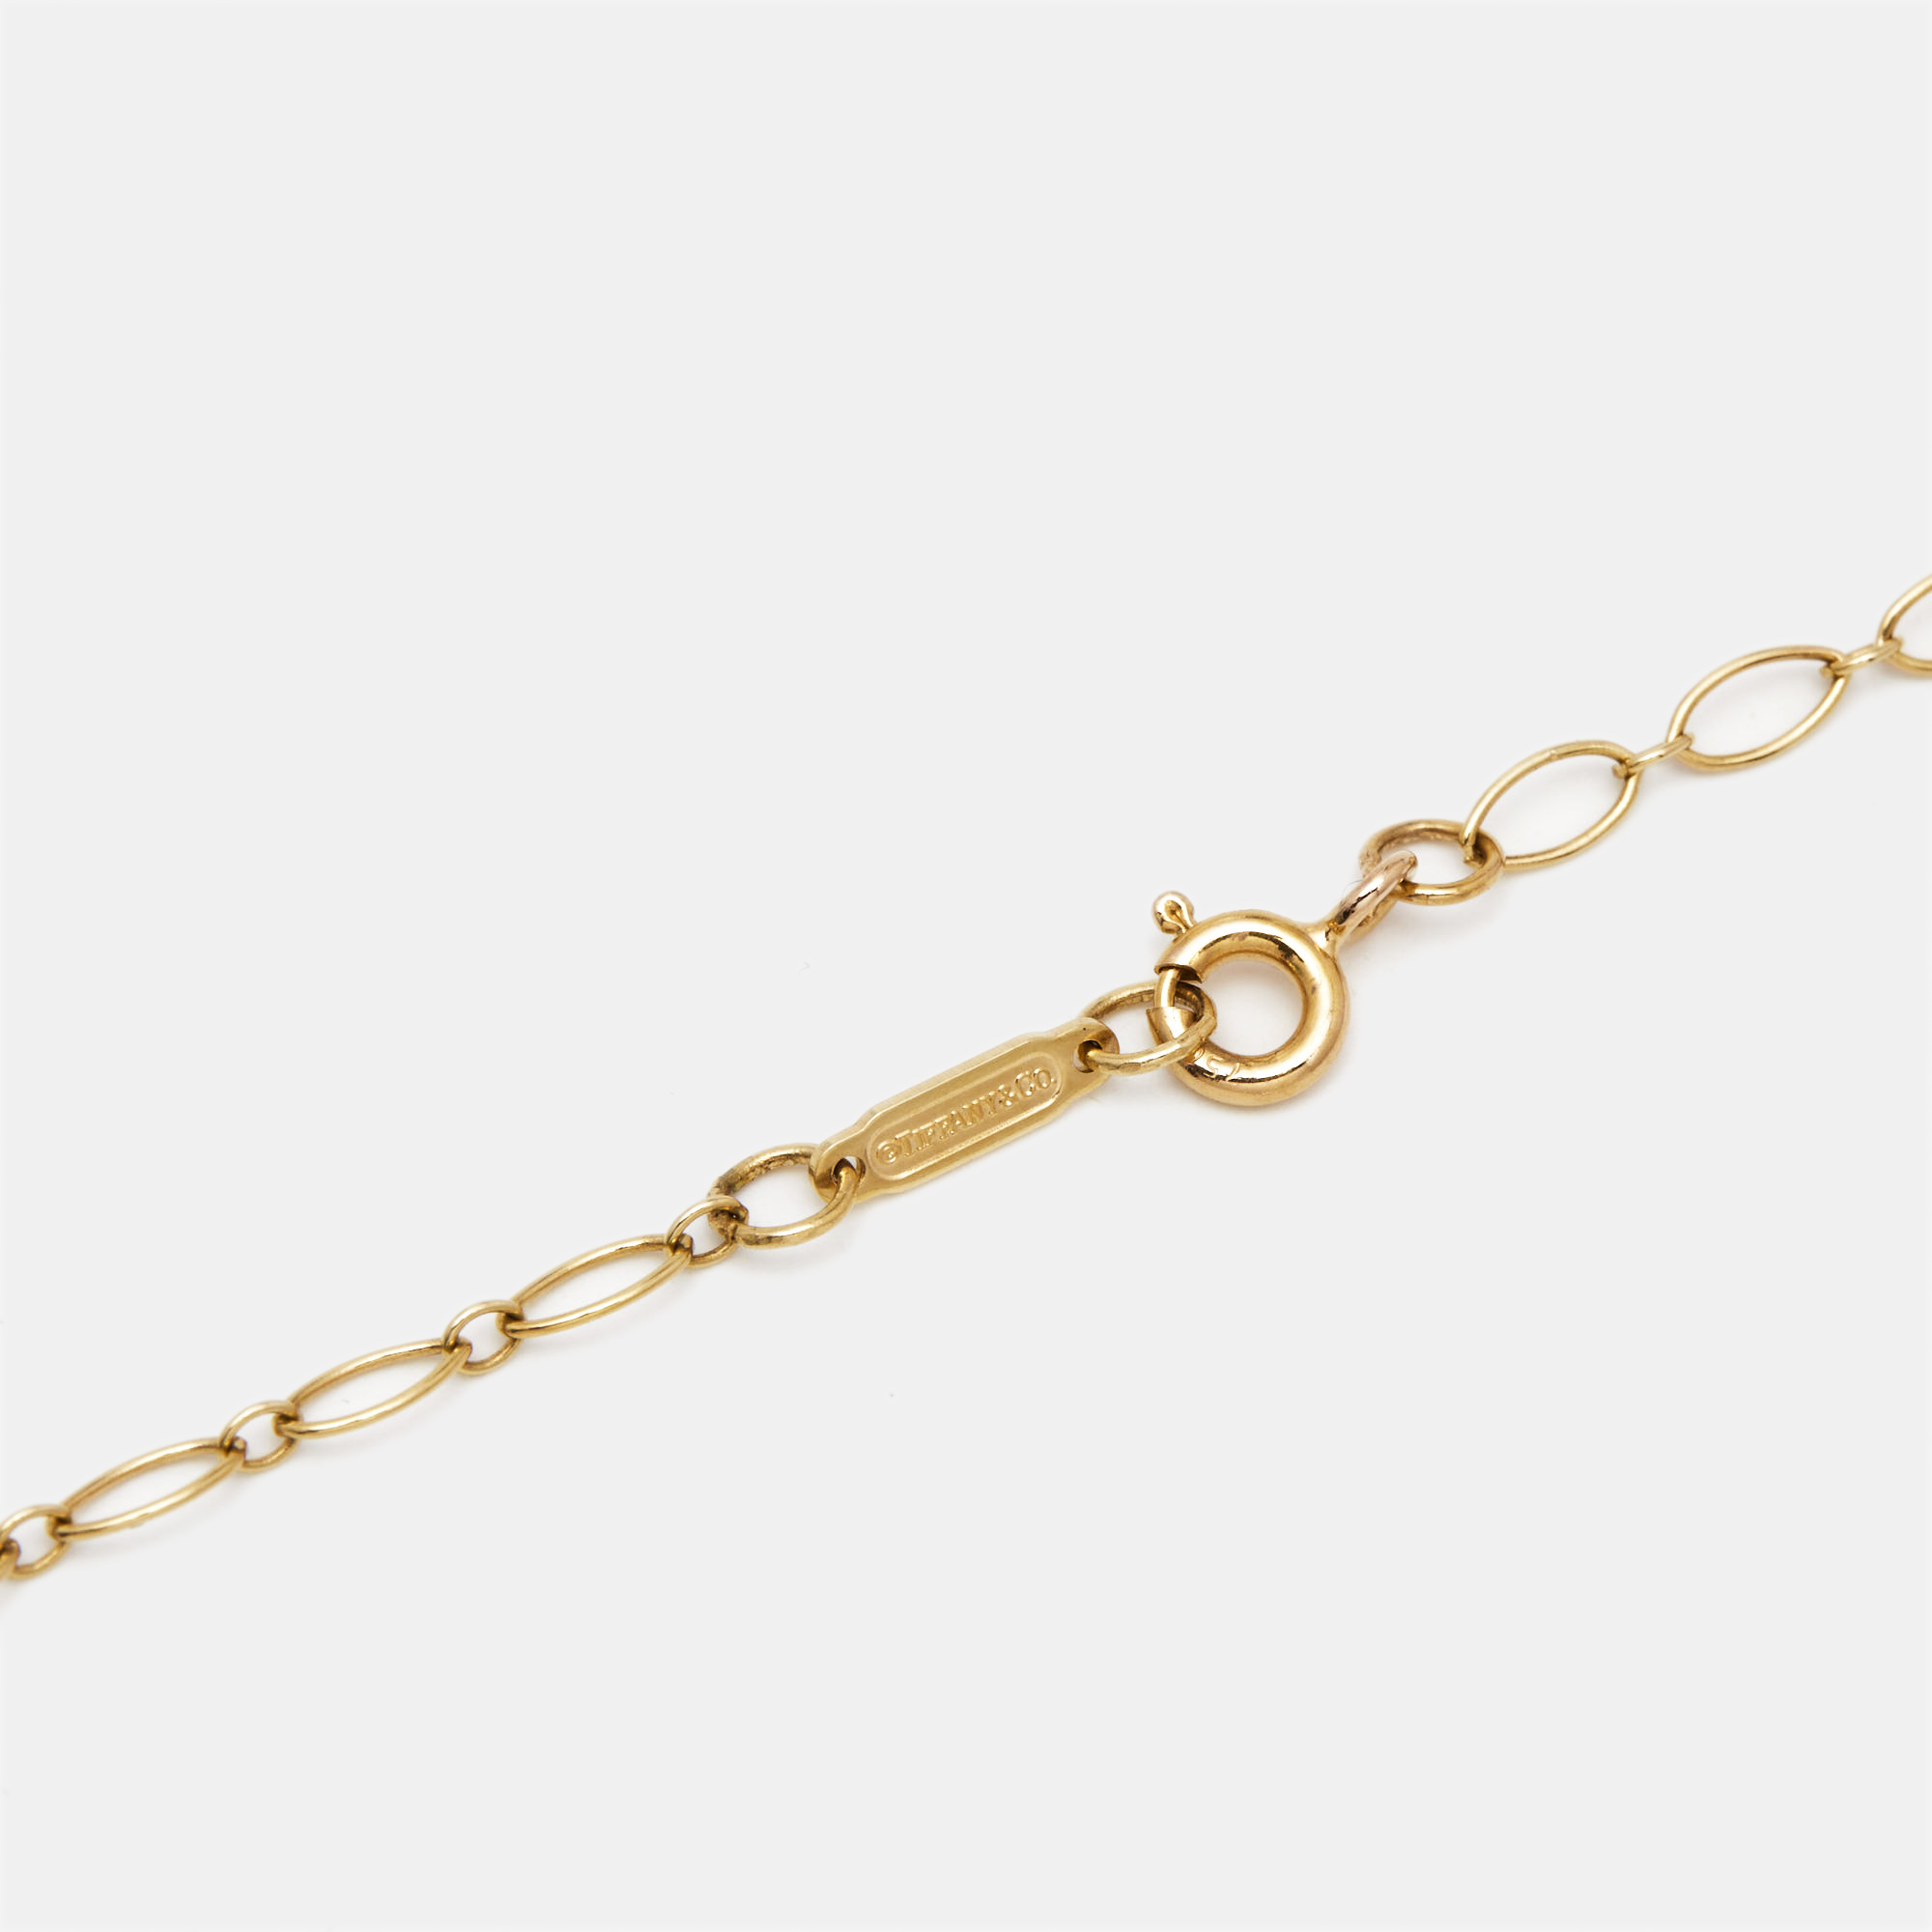 Tiffany & Co. Tiffany Keys Daisy Diamond 18k Rose Gold Long Pendant Necklace